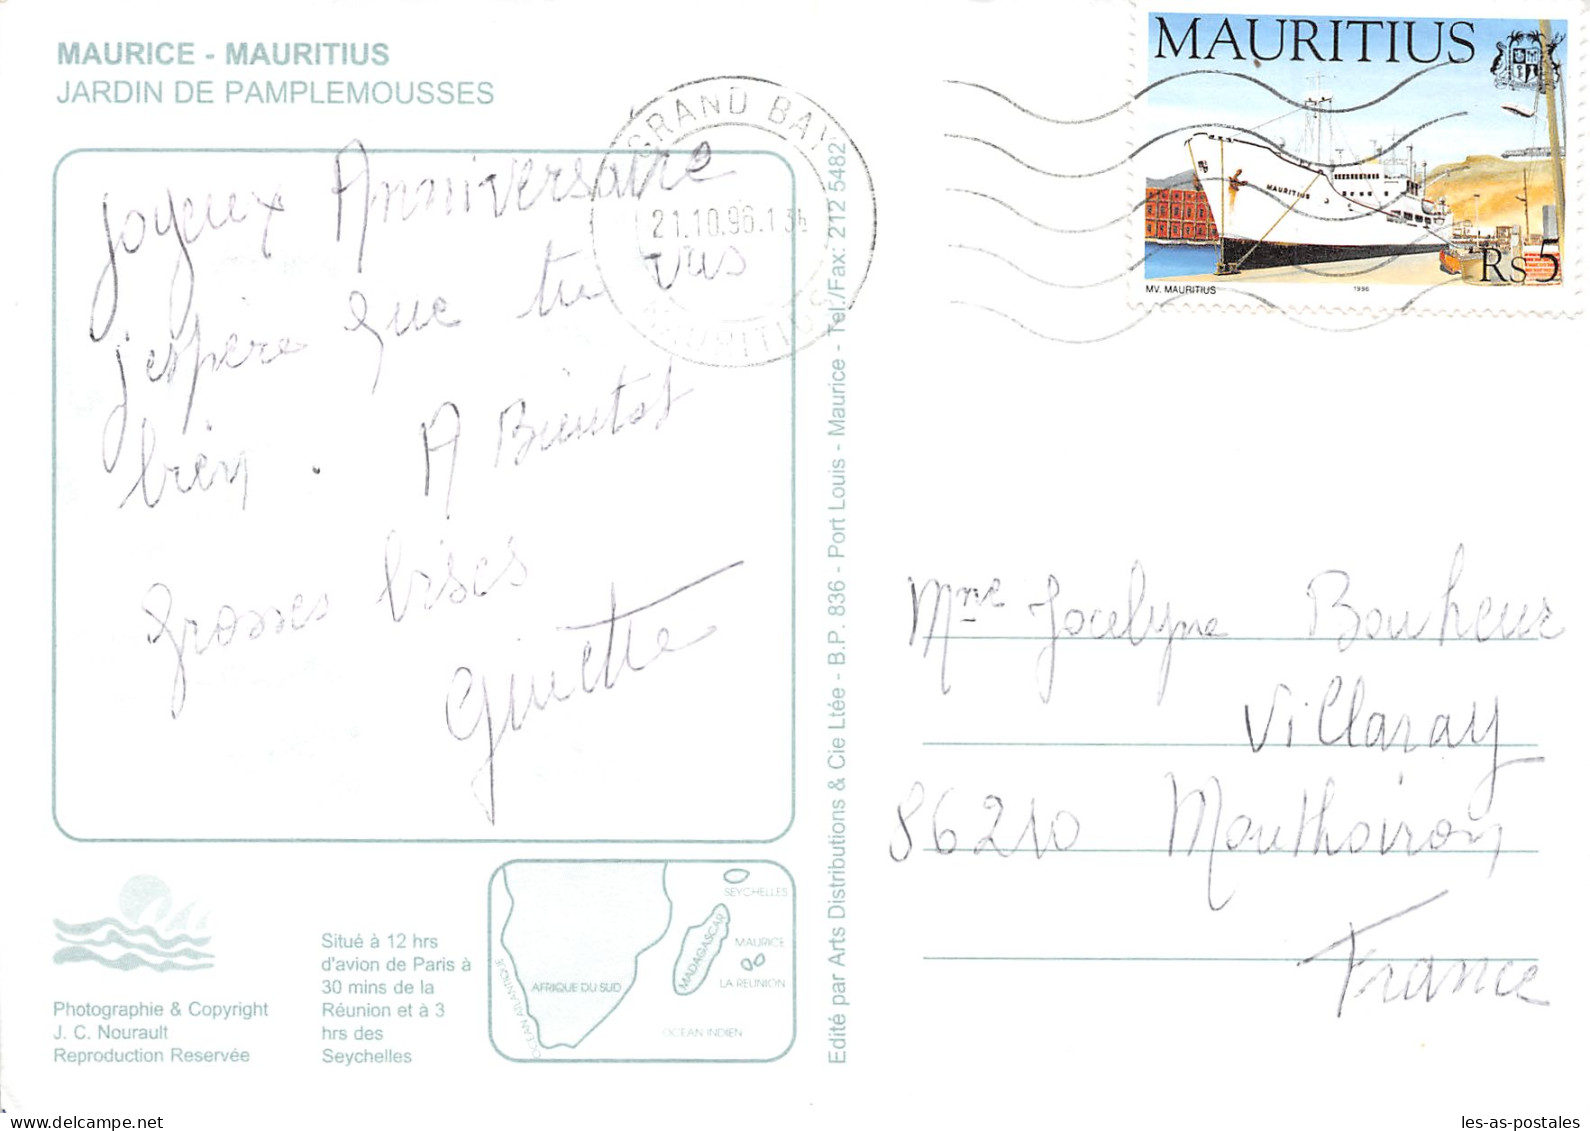 MAURITIUS JARDIN DE PAMPLEMOUSSES - Maurice